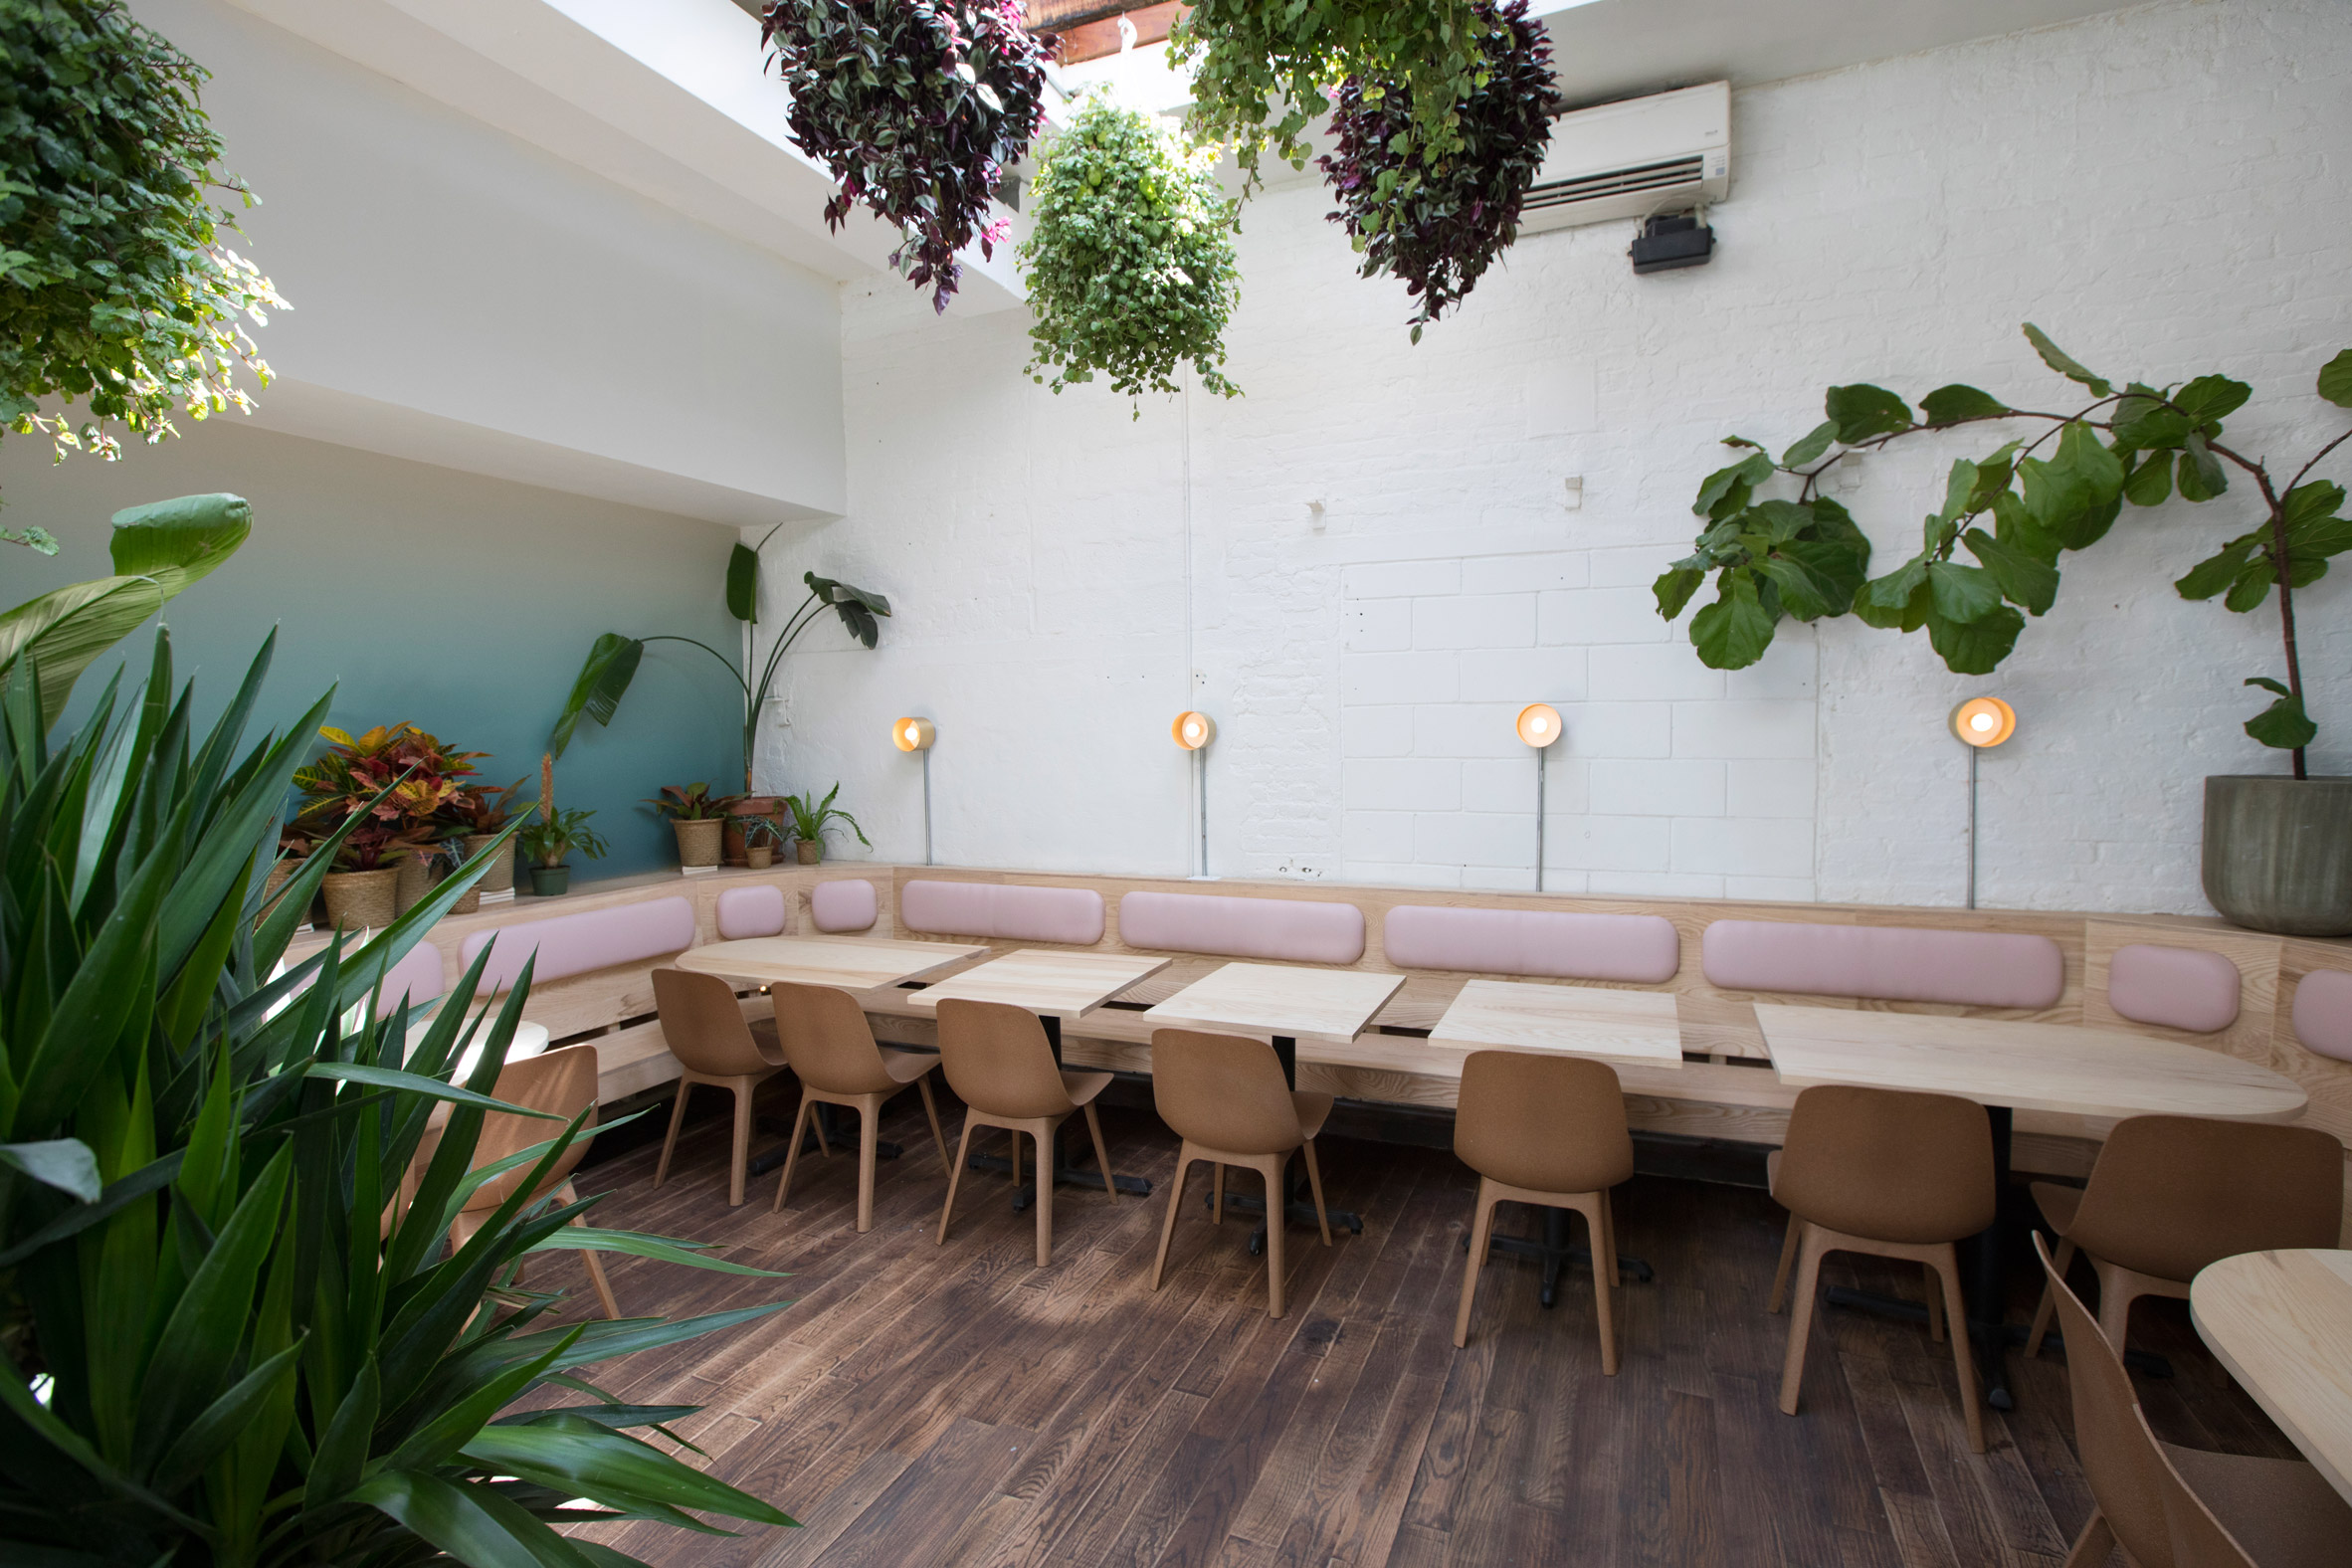 Di An Di restaurant in Brooklyn serves Vietnamese cuisine in plant-filled spaces